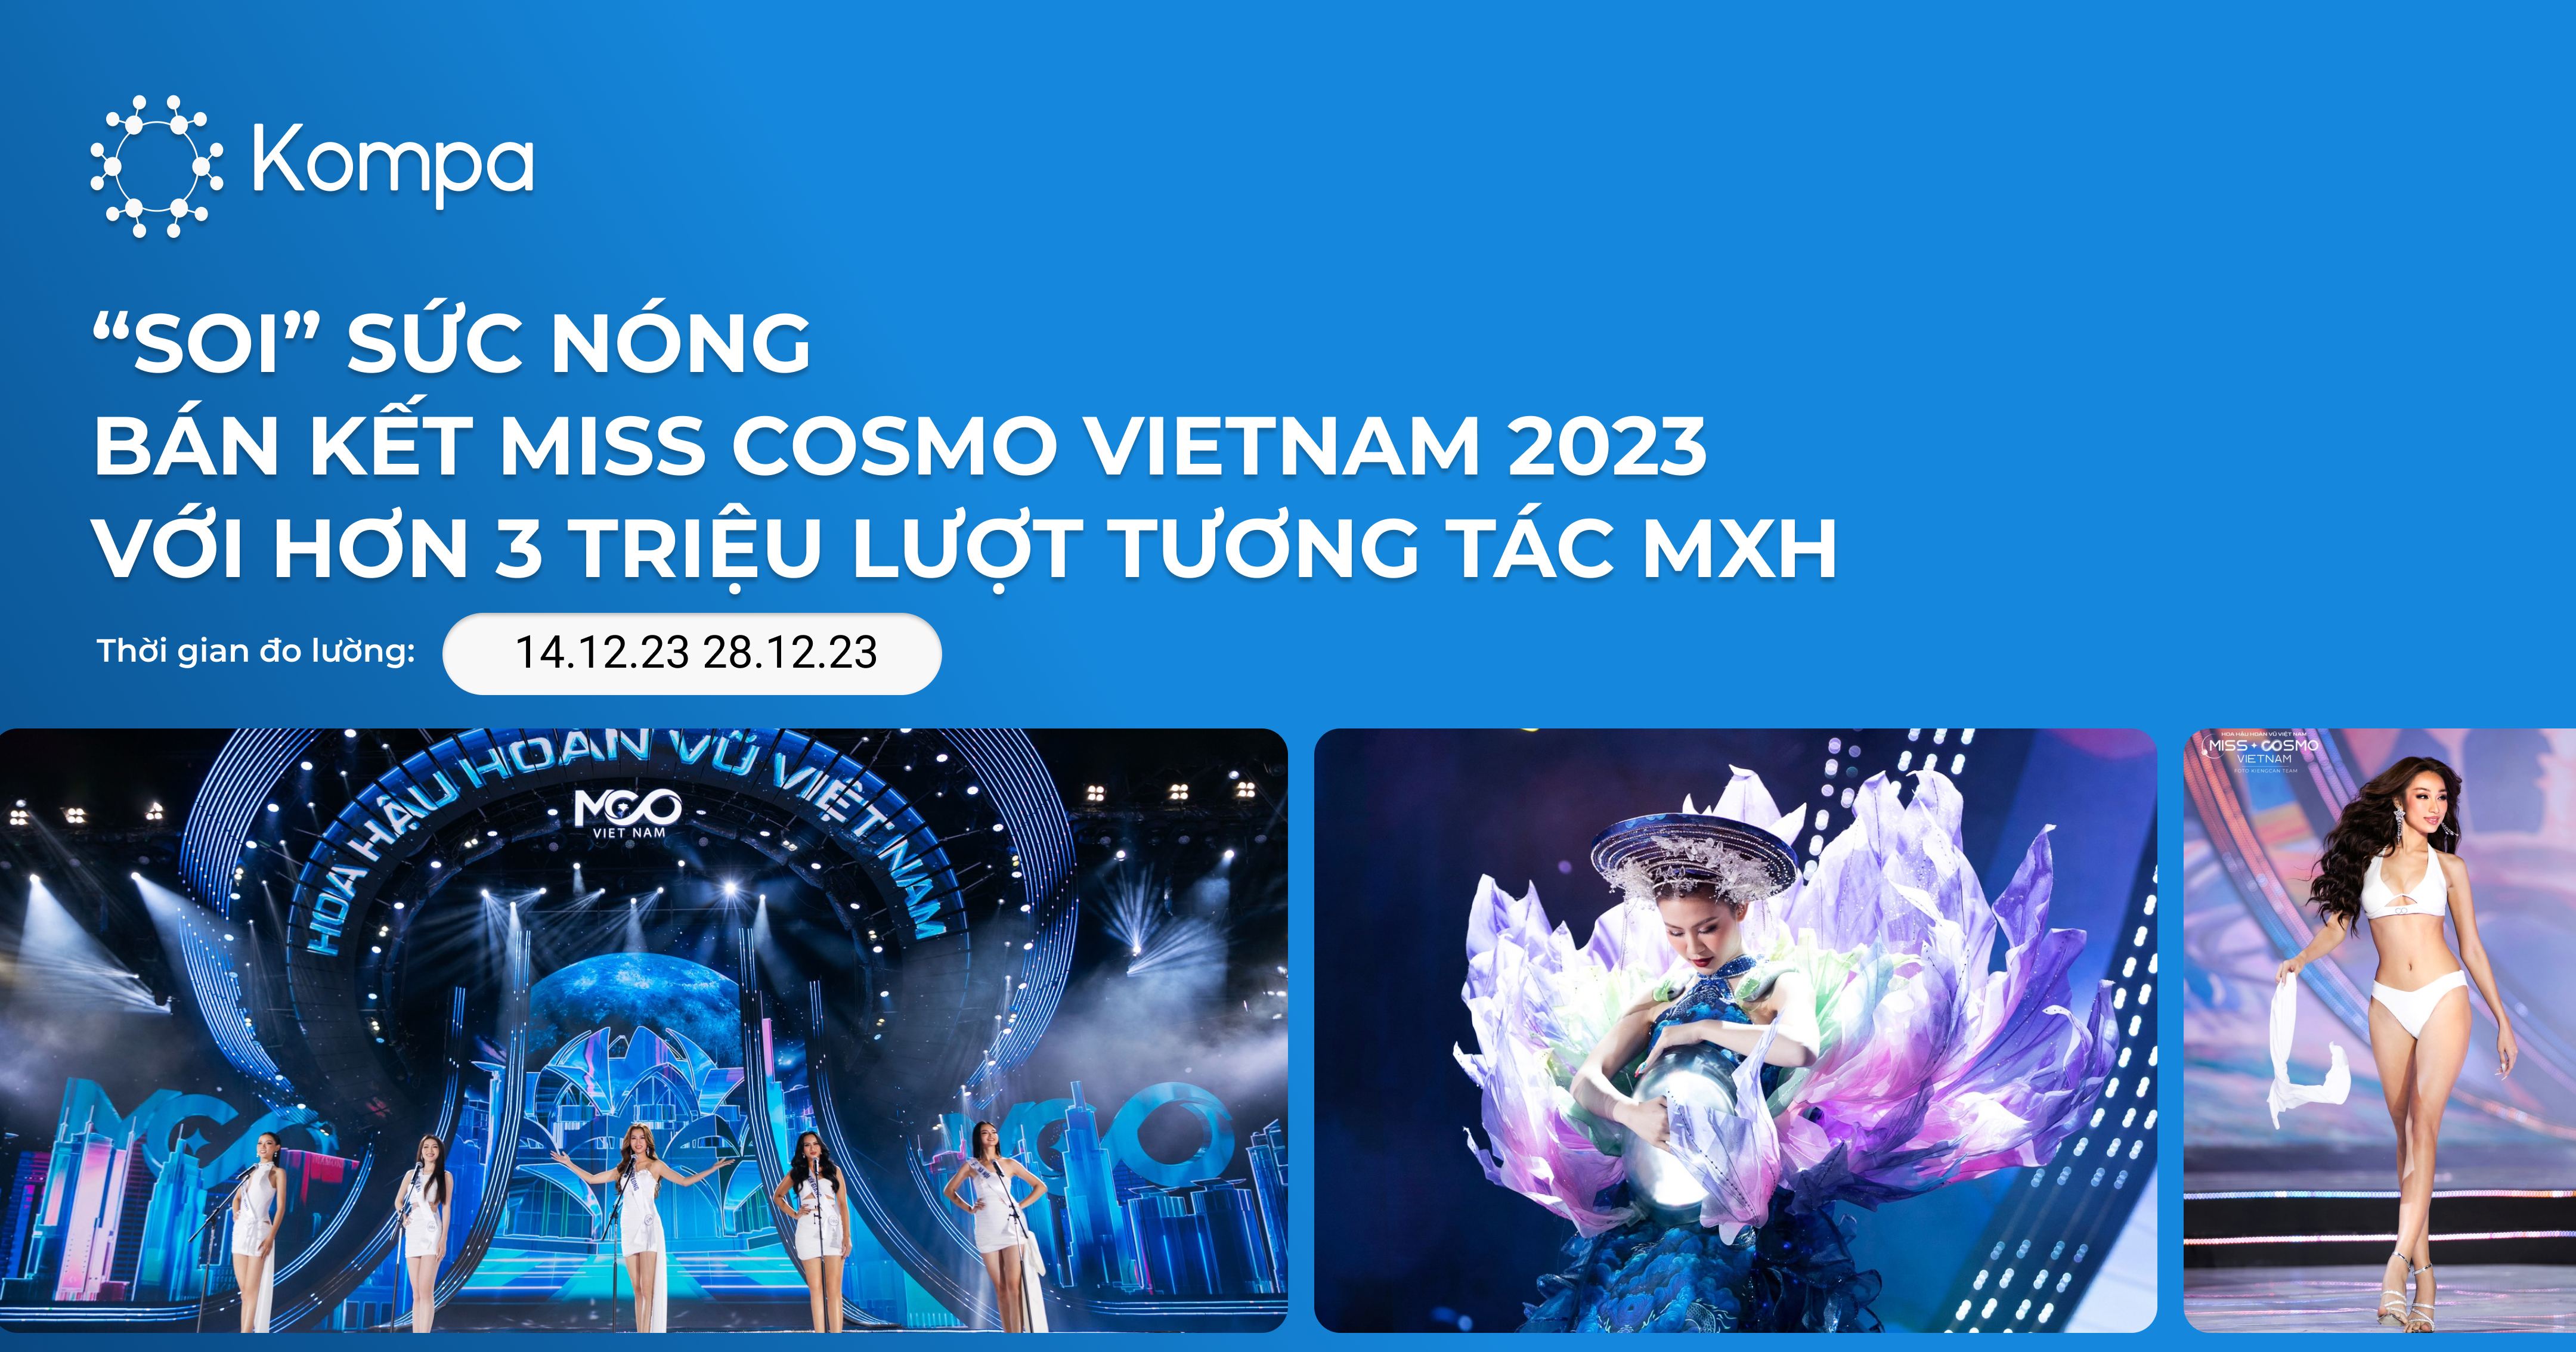 Miss Cosmo Vietnam 2023